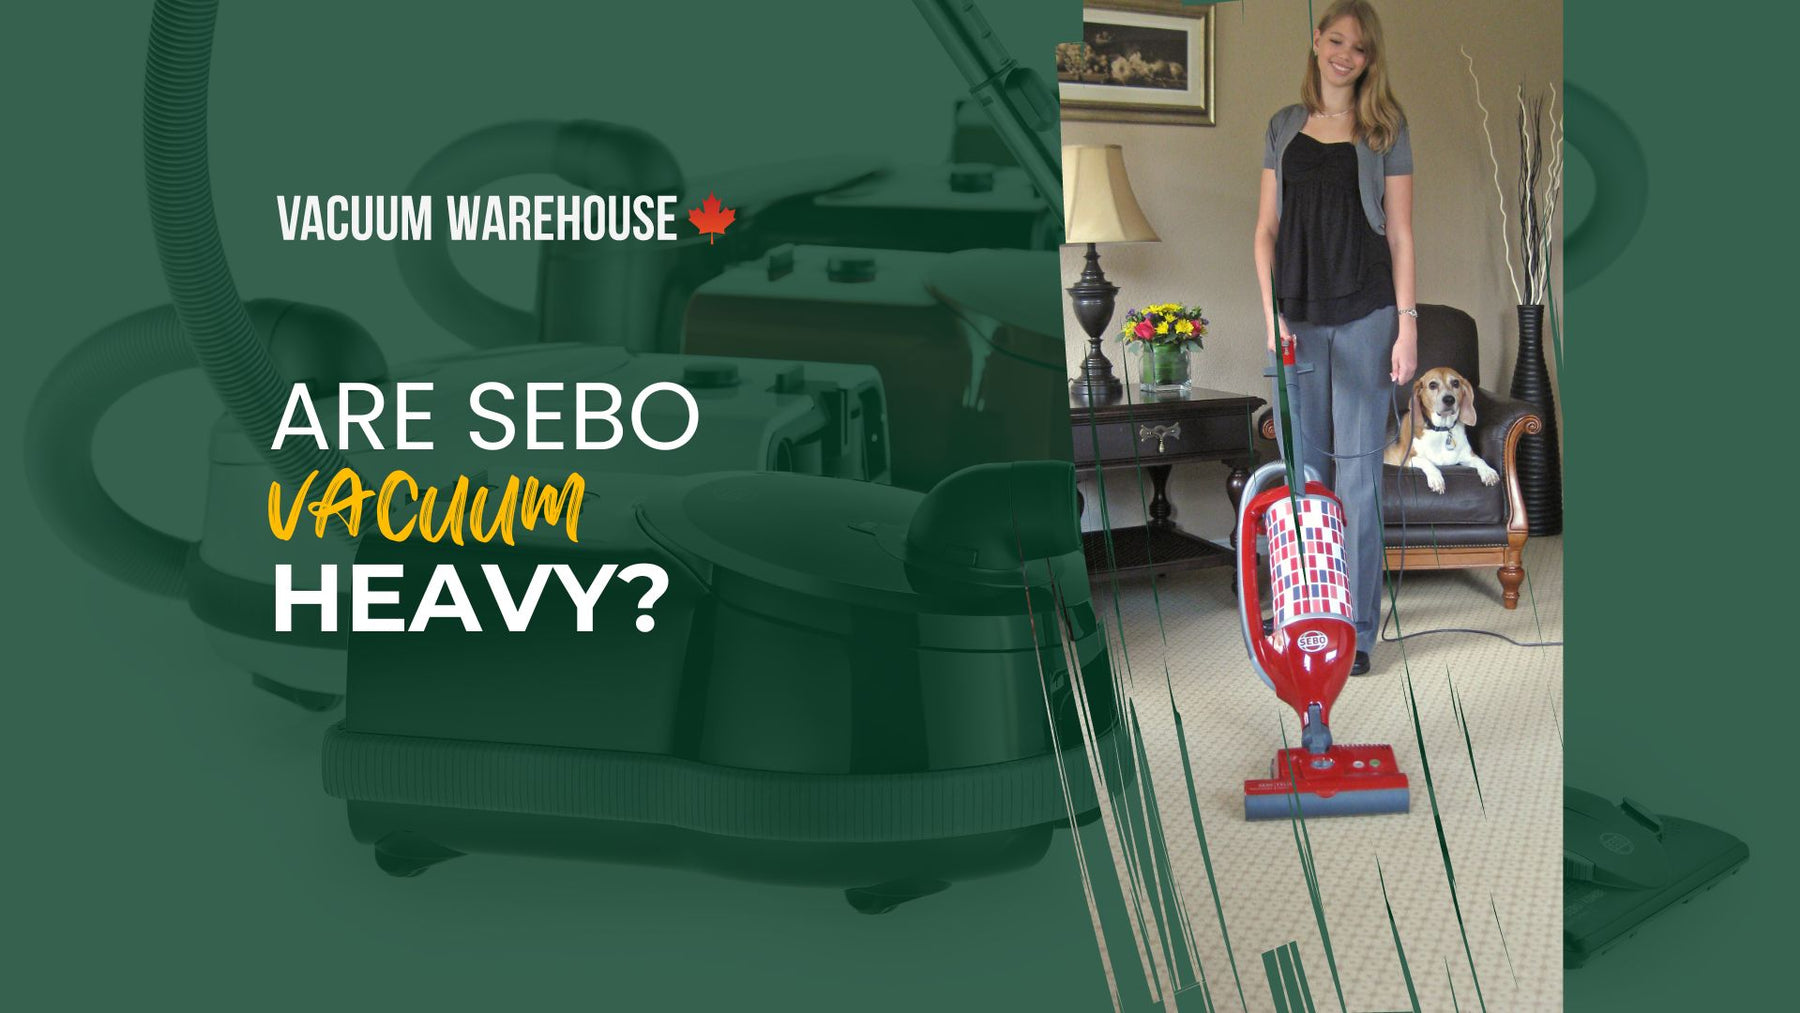 Are SEBO vacuums heavy?